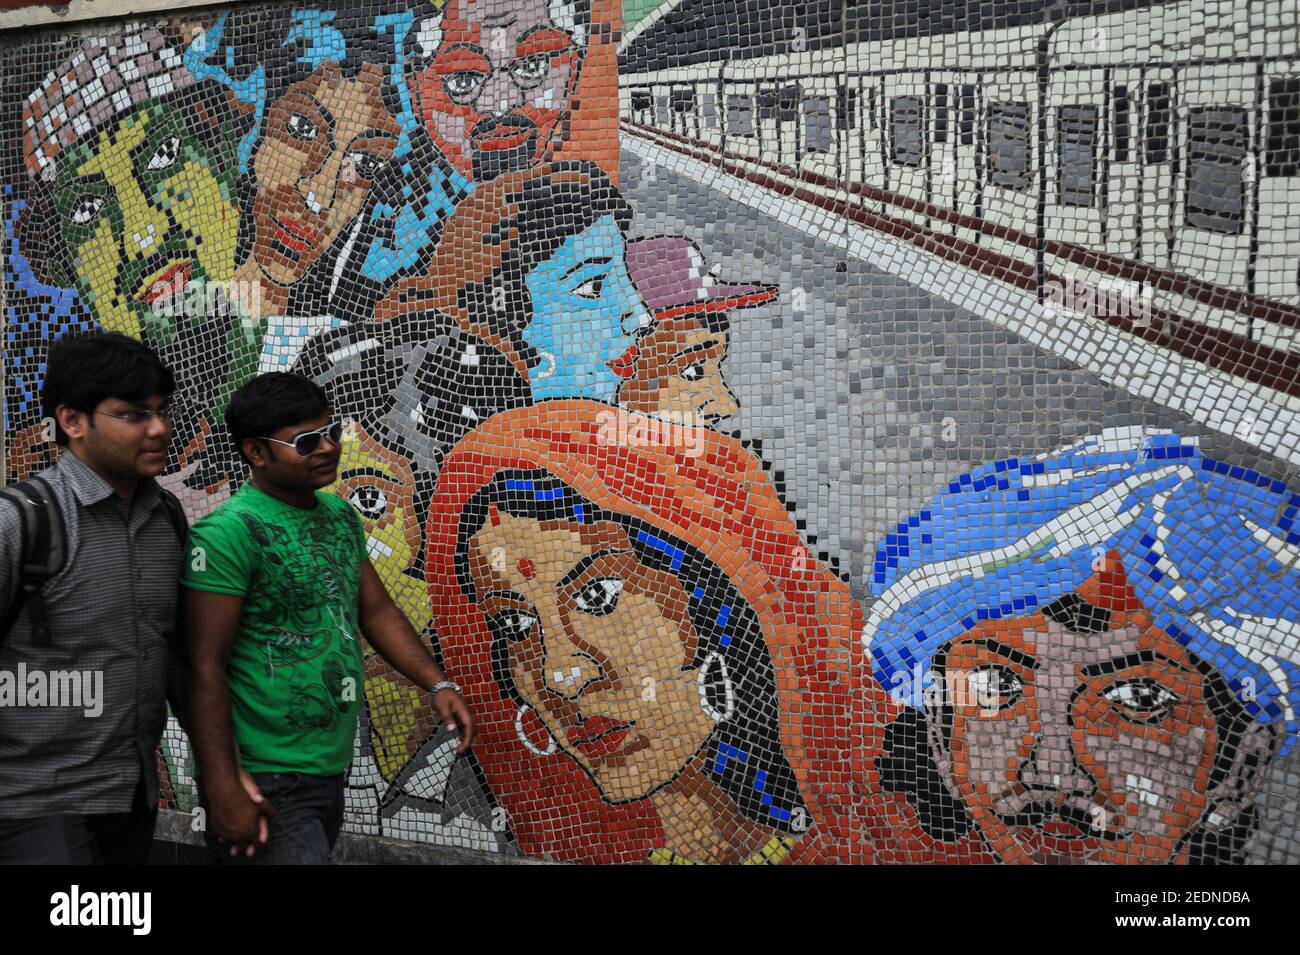 21.02.2011, Kalkutta, Bengale-Occidental, Inde - deux jeunes marchent devant une mosaïque de carreaux colorés en face d'une station de métro. 0SL110221D009CAROEX.JP Banque D'Images